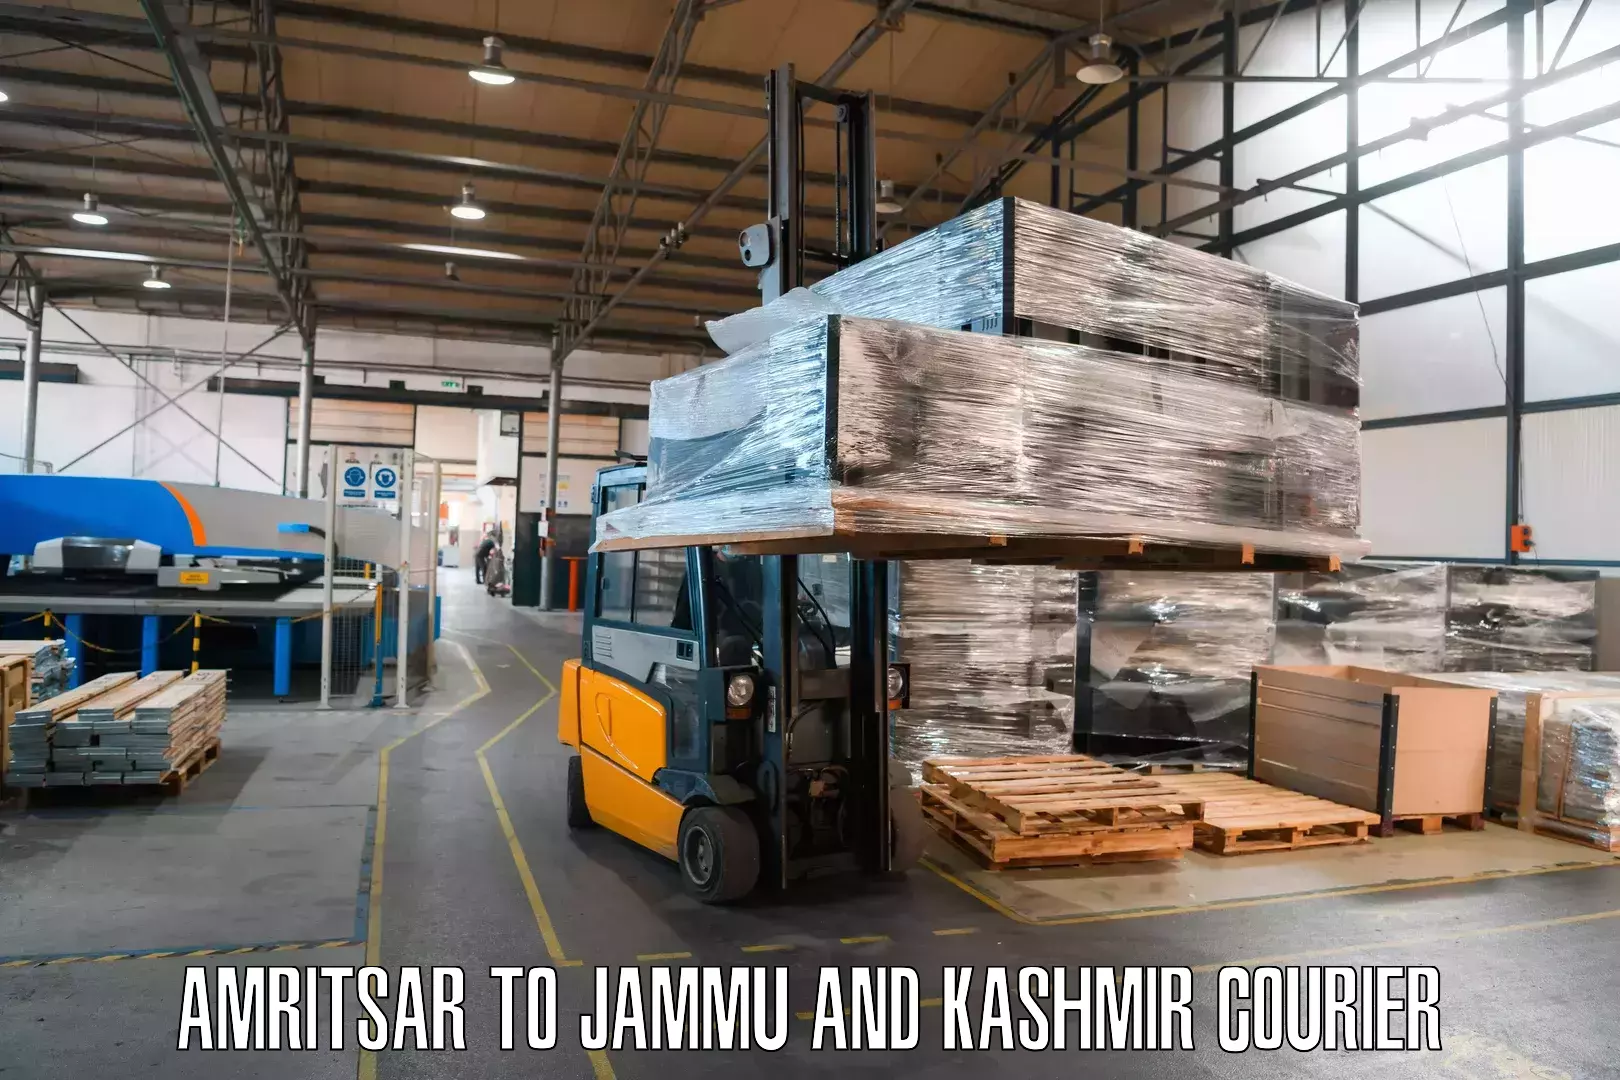 Ocean freight courier Amritsar to Srinagar Kashmir